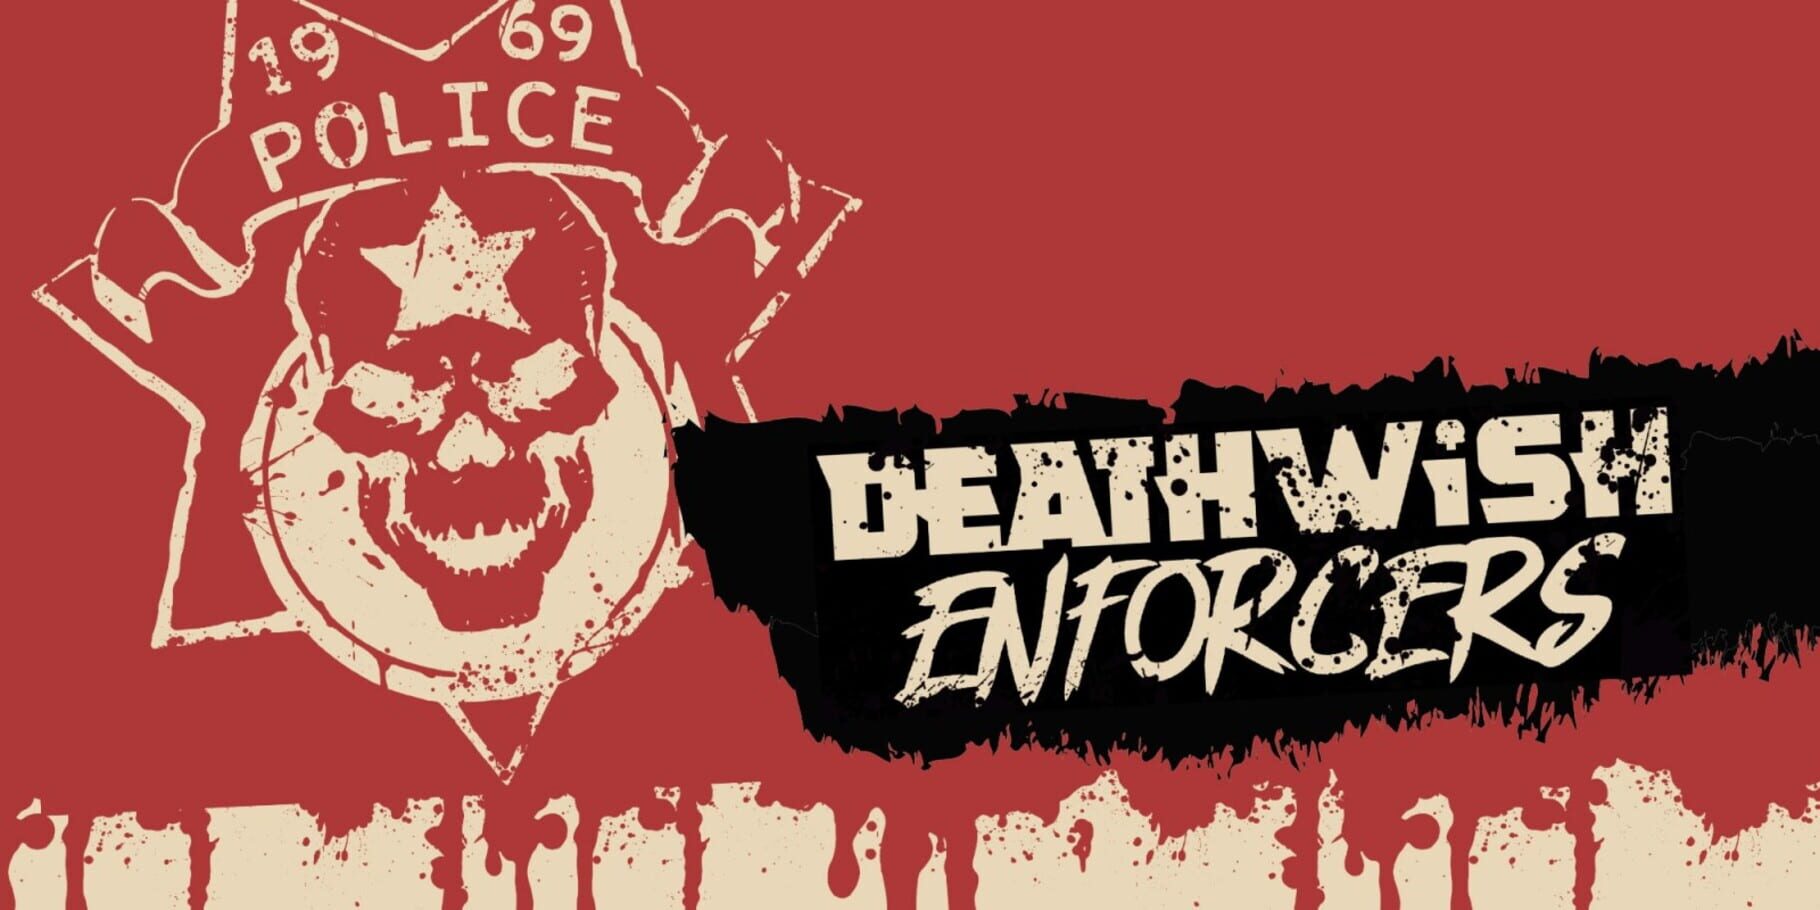 Deathwish Enforcers artwork